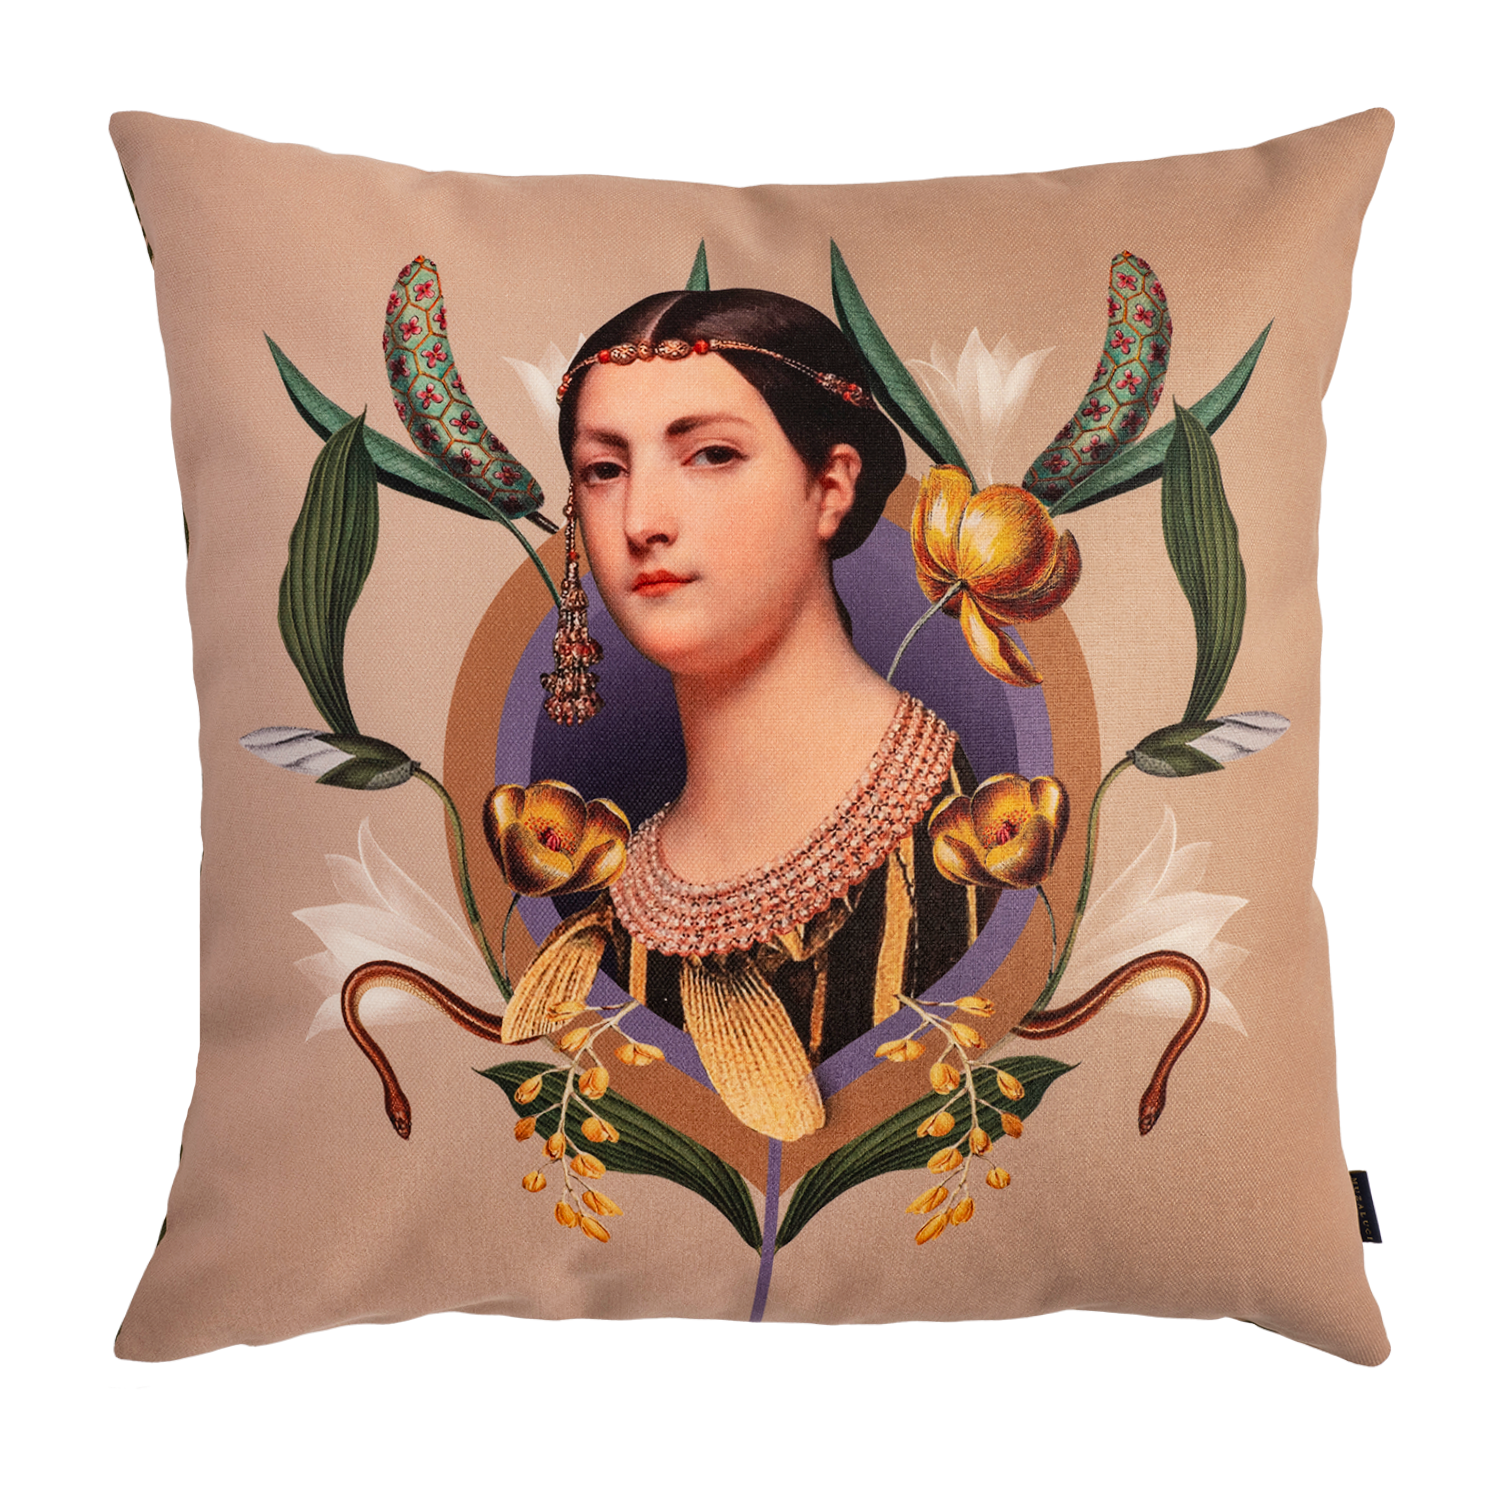 Retro Woman - Canvas Pillow